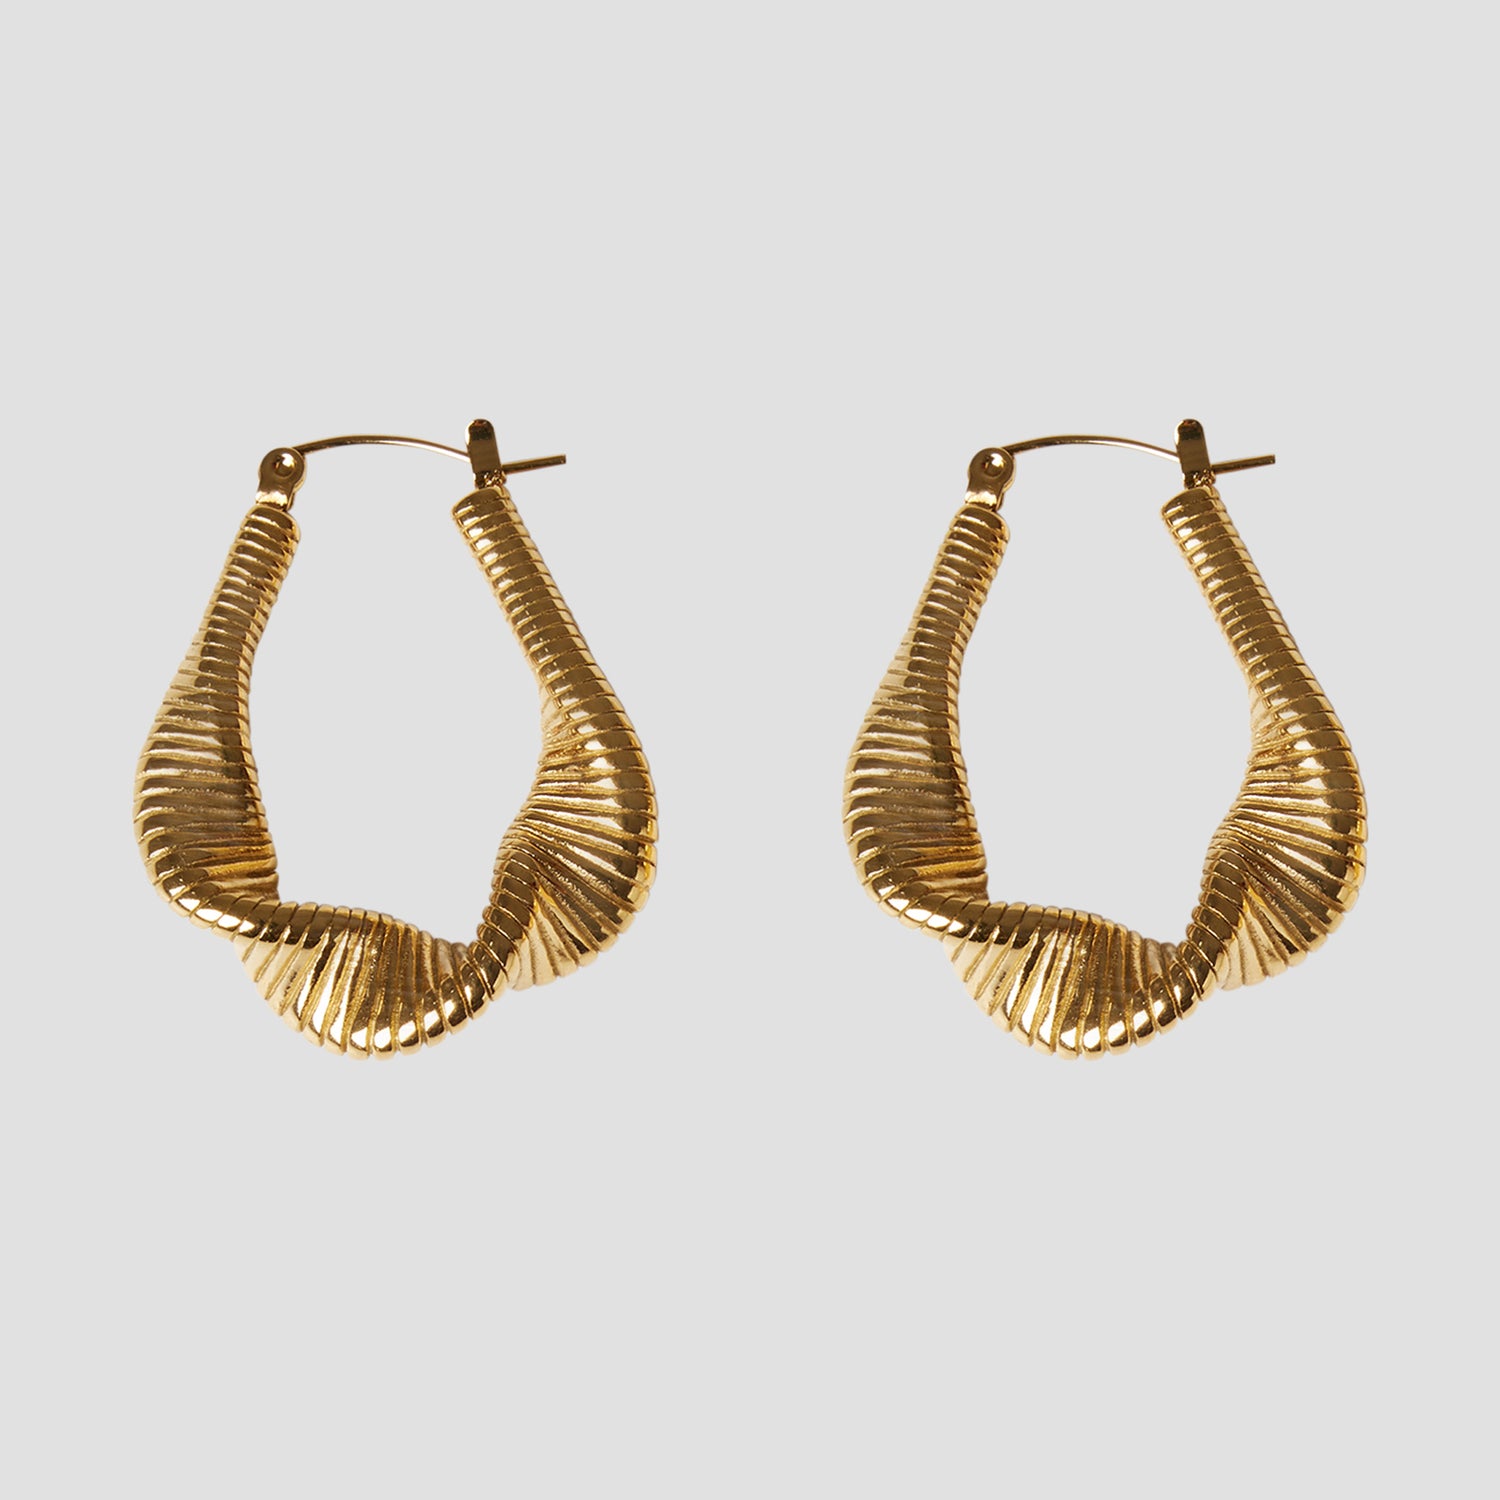 18k Gold Twist Geometric Earrings